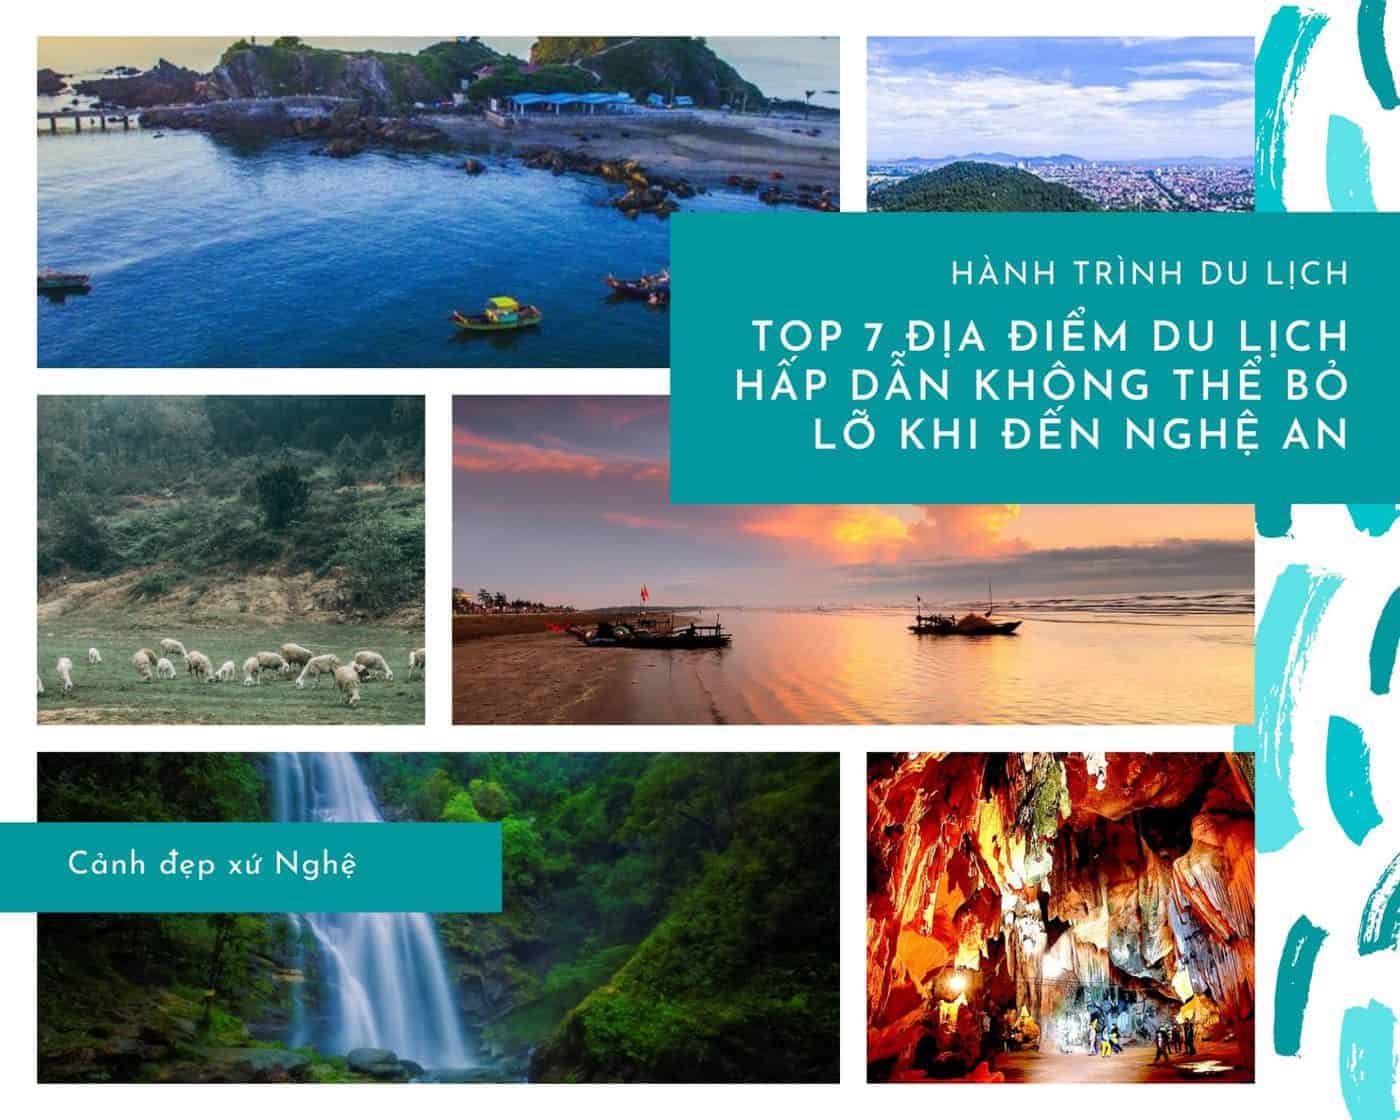 Top 7 địa điểm du lịch hấp dẫn không thể bỏ lỡ khi đến Nghệ An